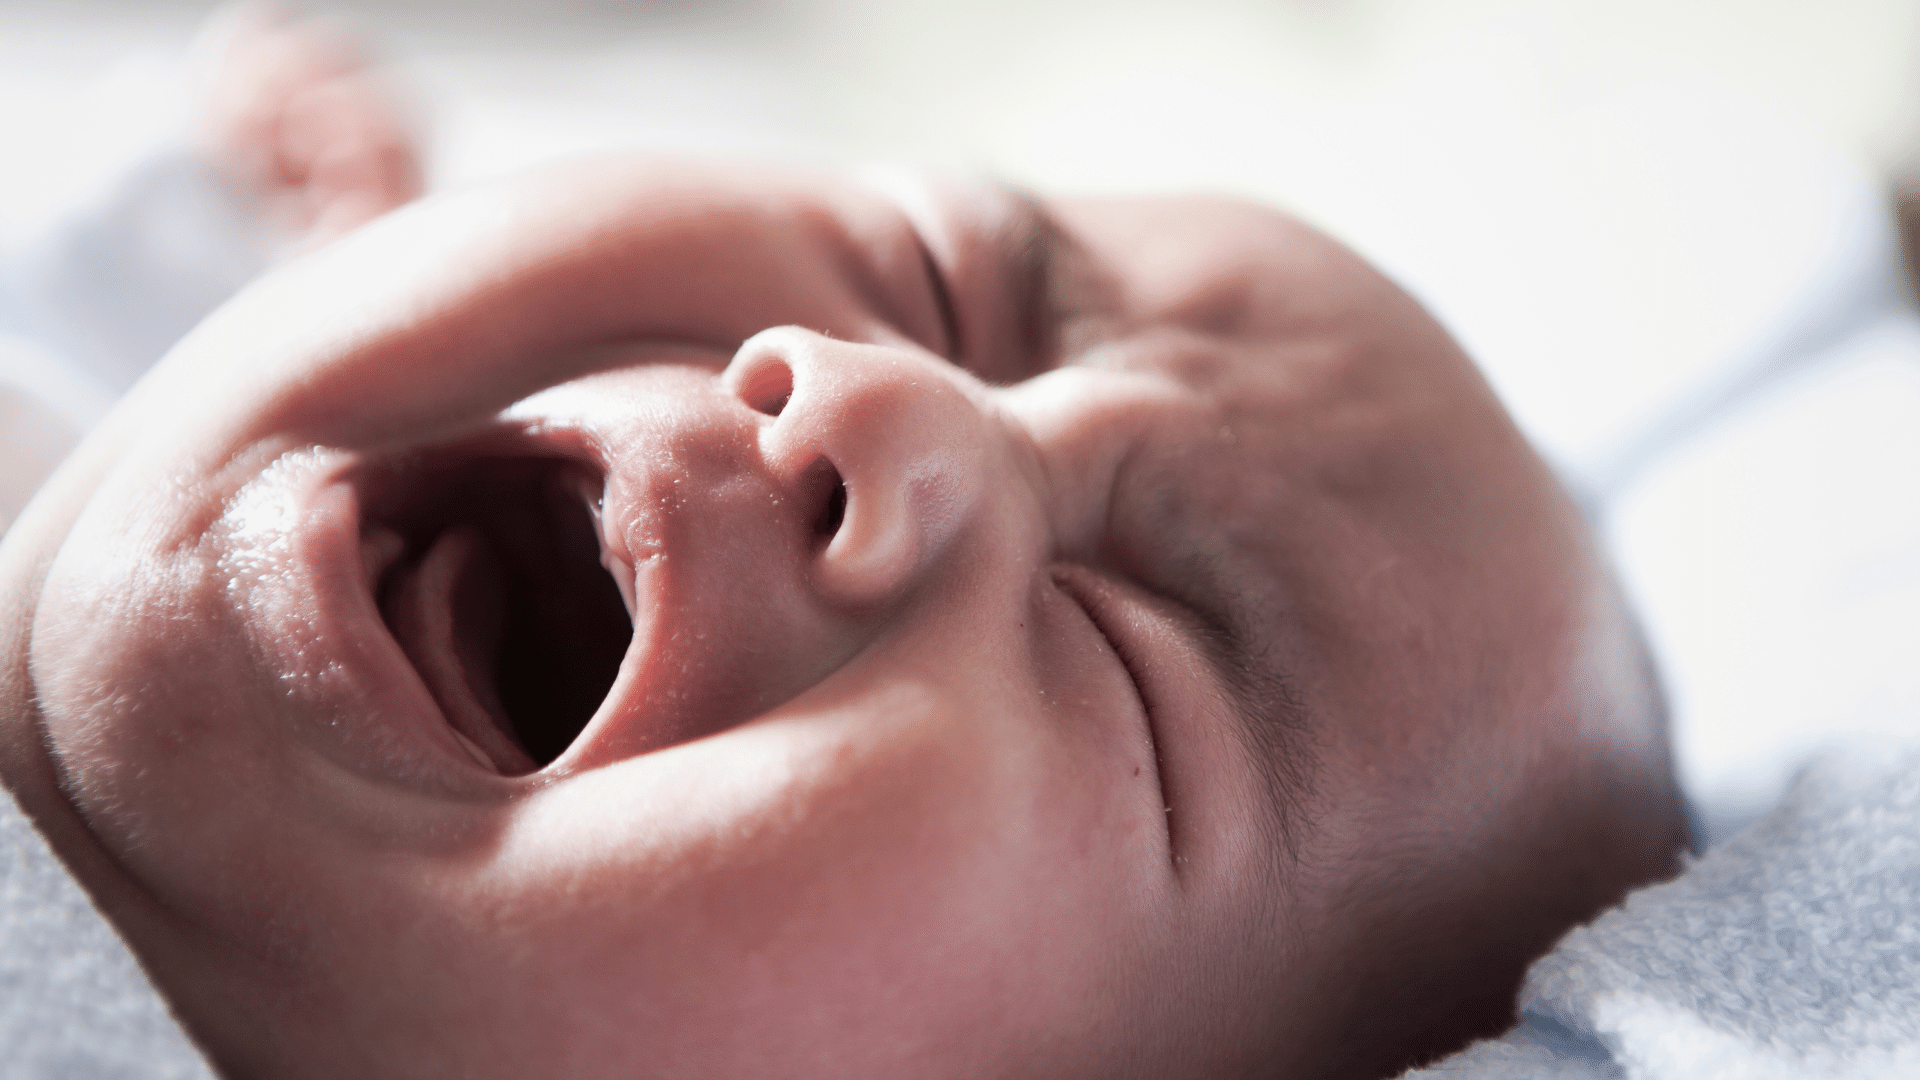 Baby wailing while nursing, infant weeping during breastfeeding, newborn sobbing while nursing, baby bawling during feeding